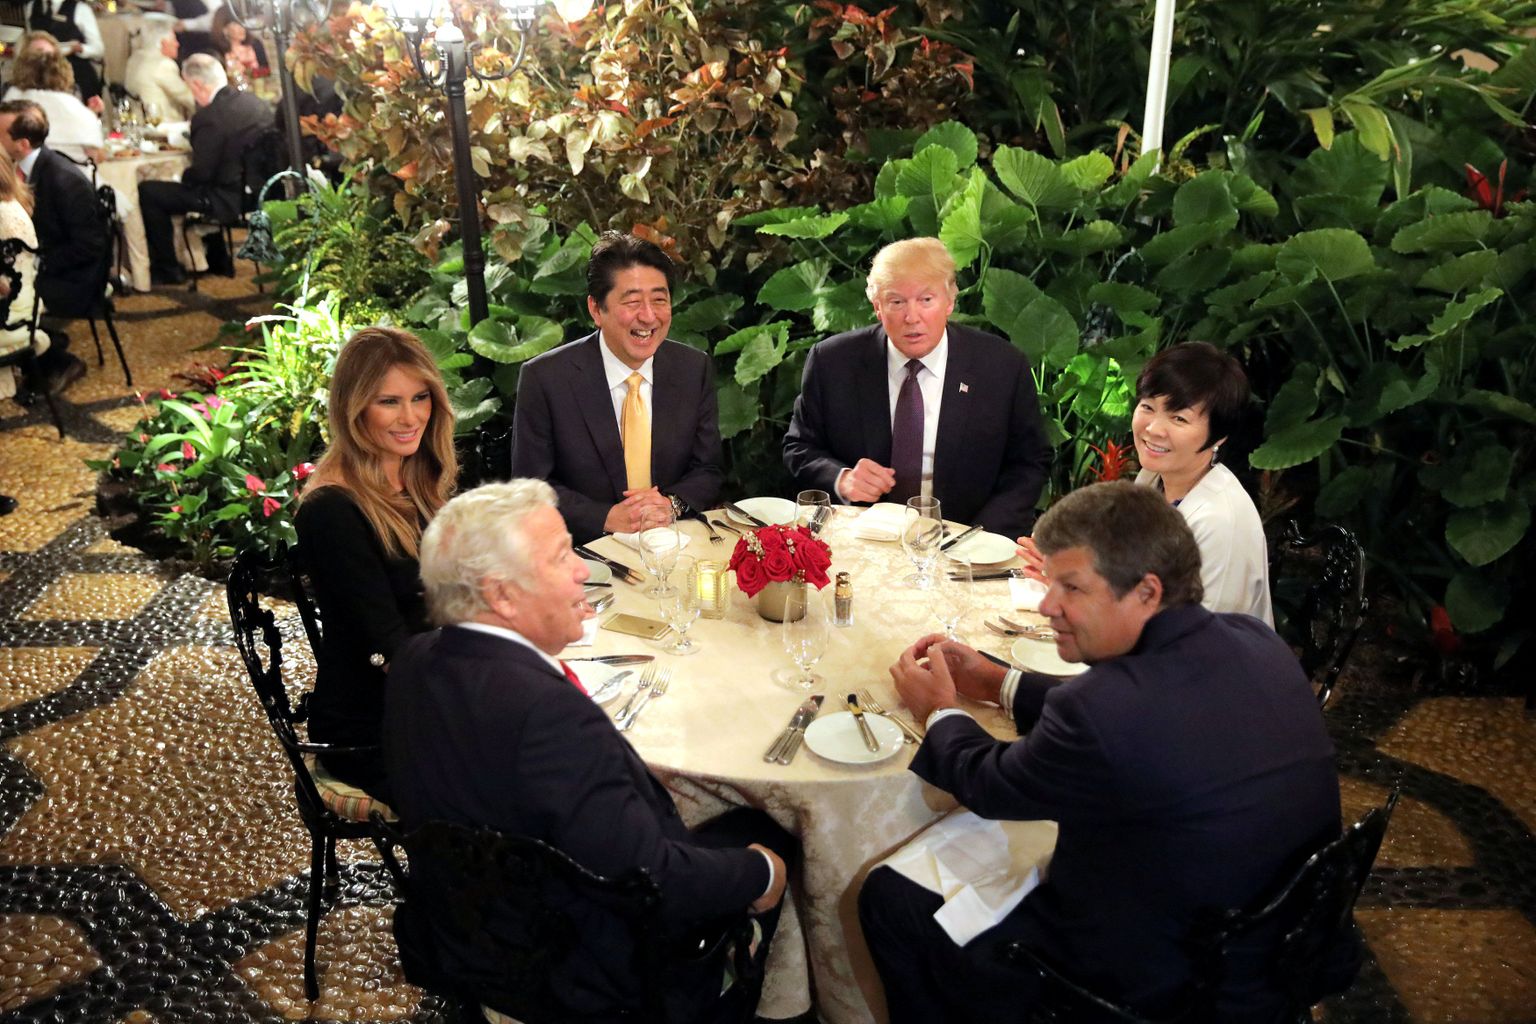 Синдзо Абэ и его супруга Аки Абэ за столом вместе с Дональдом Трампом и Меланией Трамп во Флориде в феврале этого года.